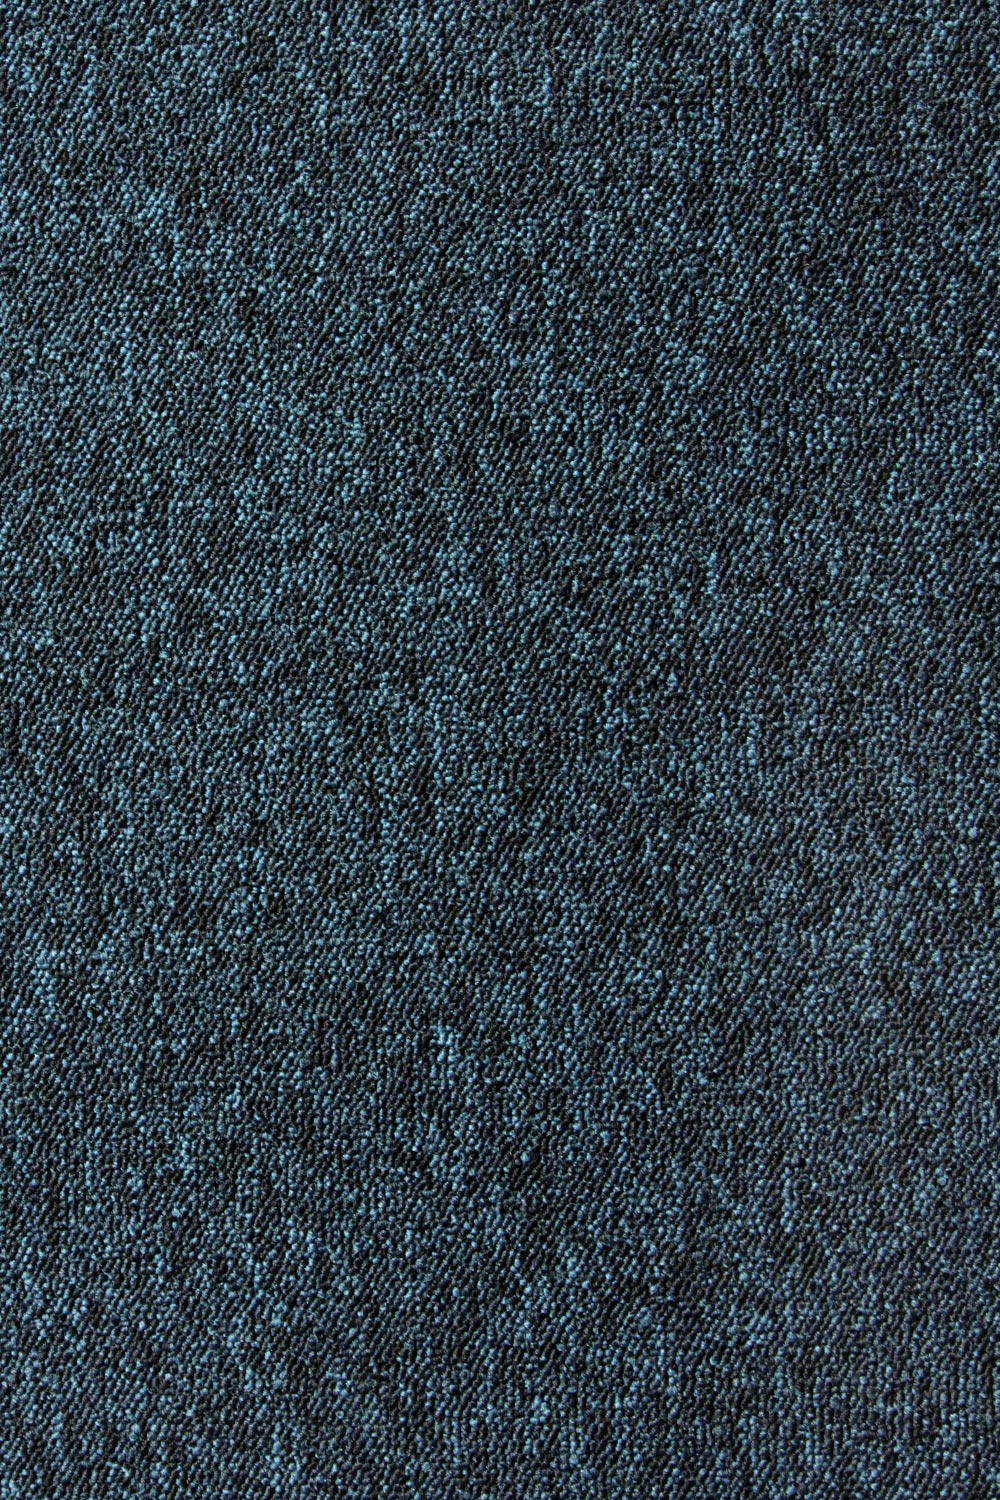 Metrážny koberec Lyon Solid 272